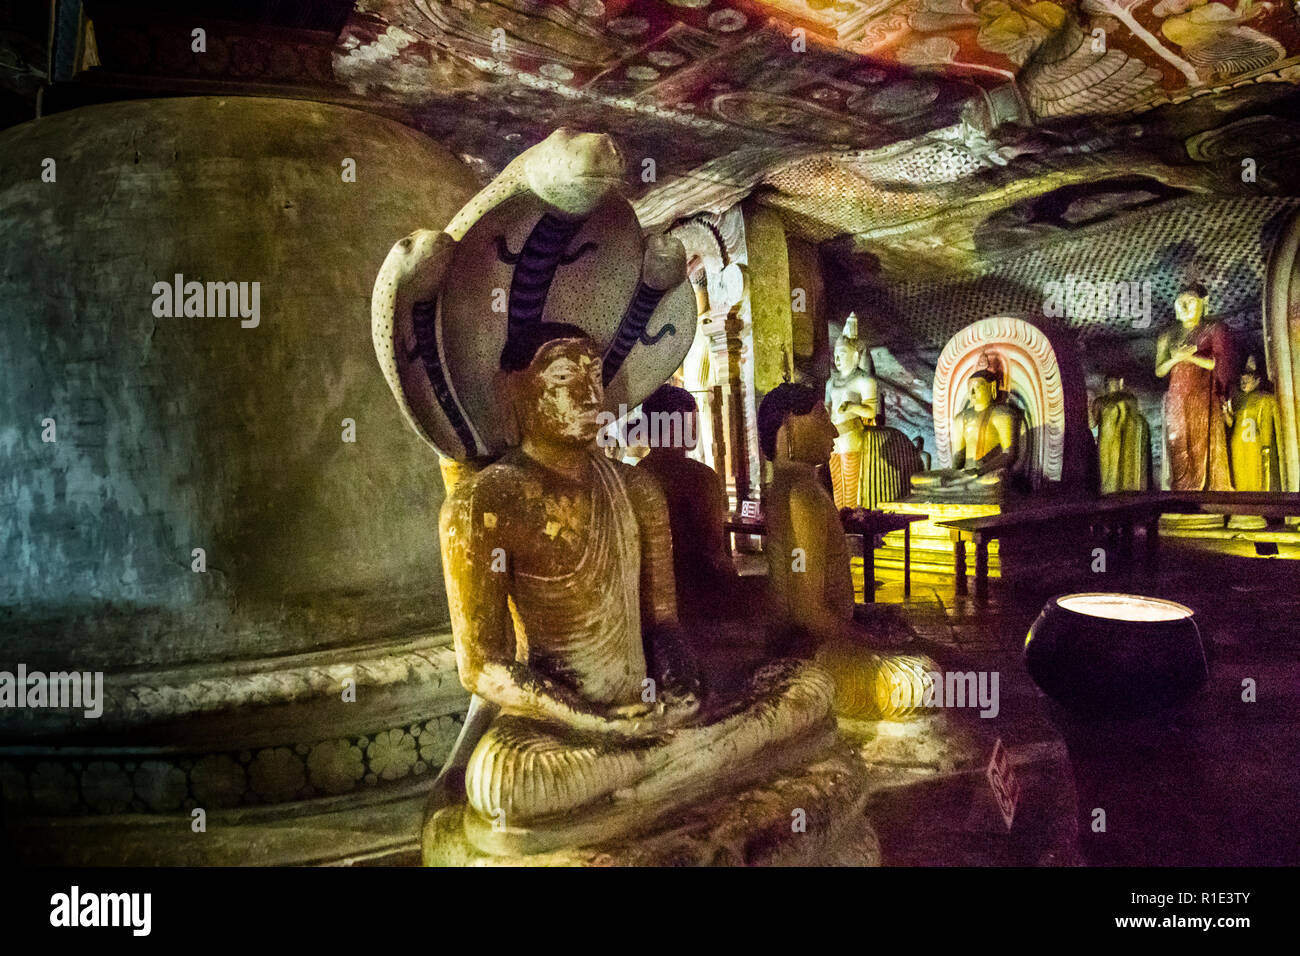 Templo de la Cueva de Dambulla, Sri Lanka. Hay más de 48 estatuas de Buda en los templos cueva de Dambulla. Las estatuas de Naga representan a Buda protegido por un rey cobra mientras medita Foto de stock